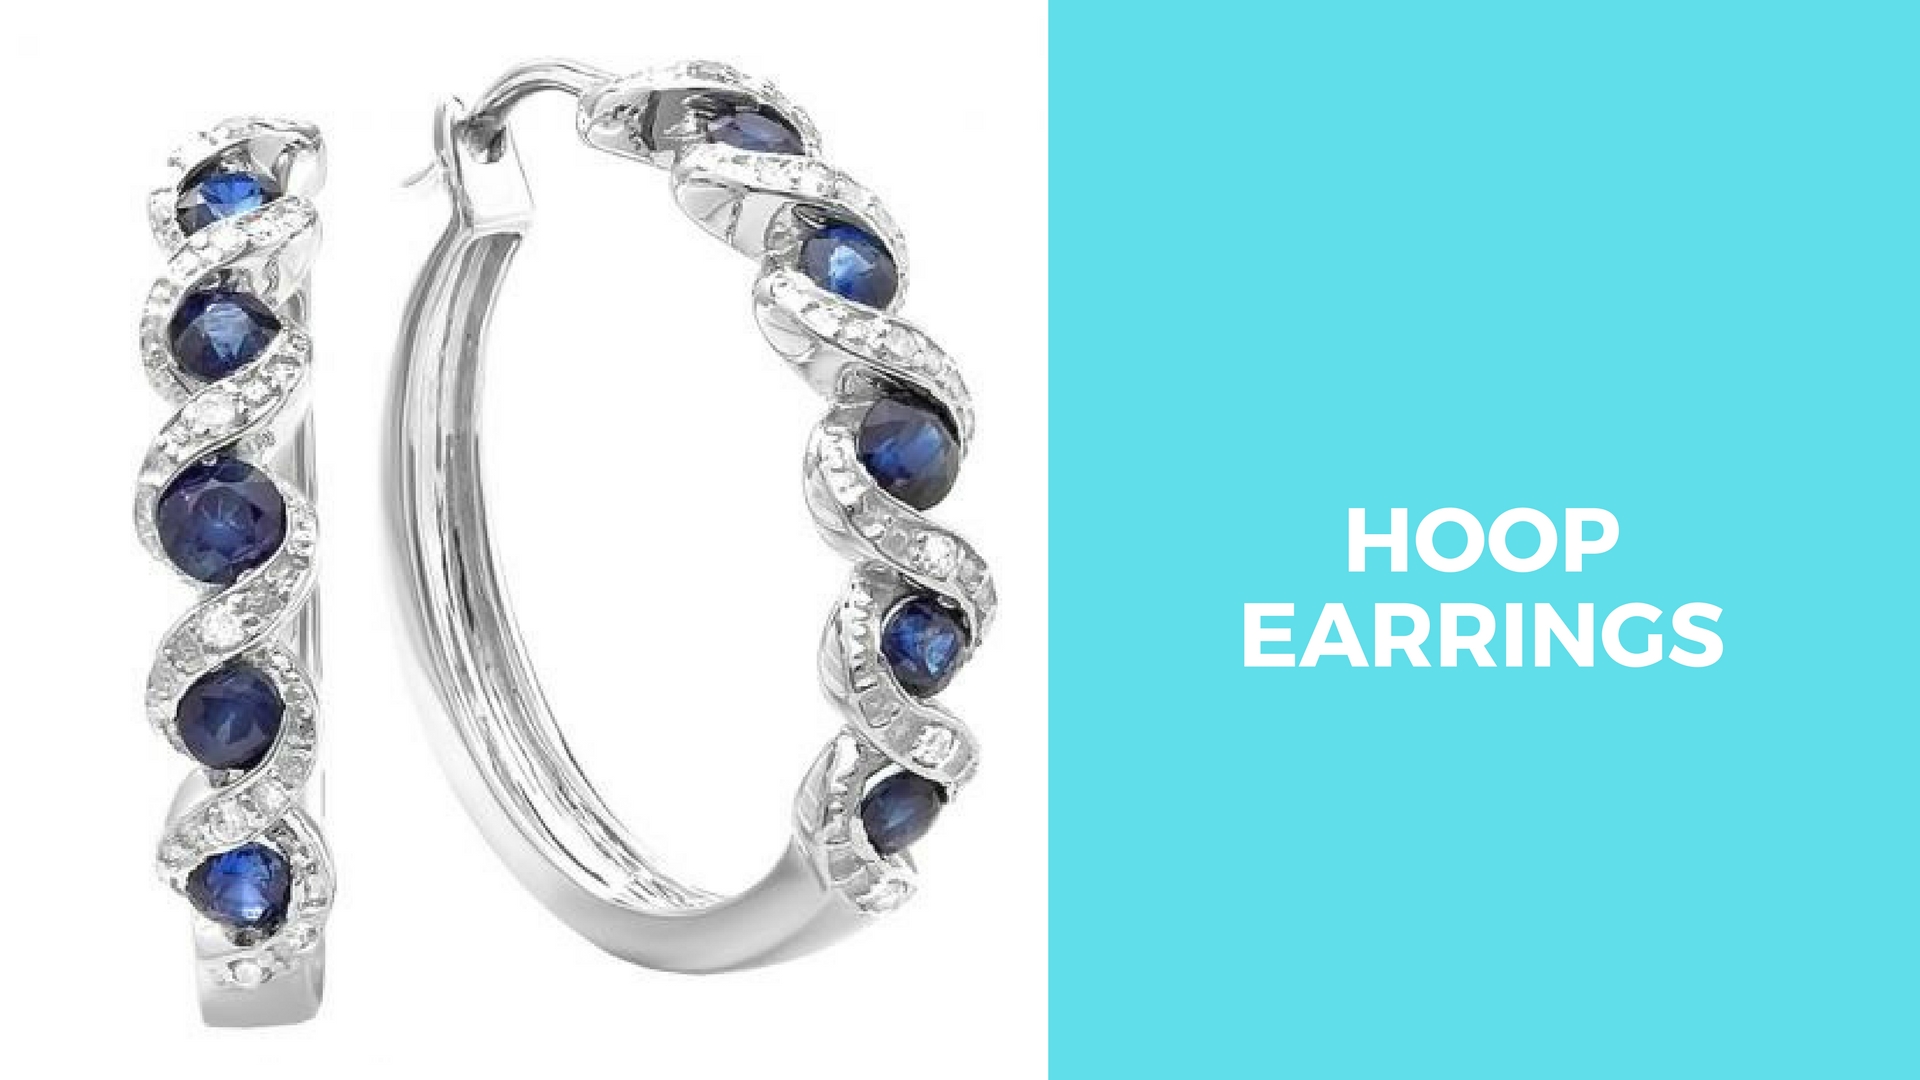 Hoop Earrings - Must Have Jewelry for women